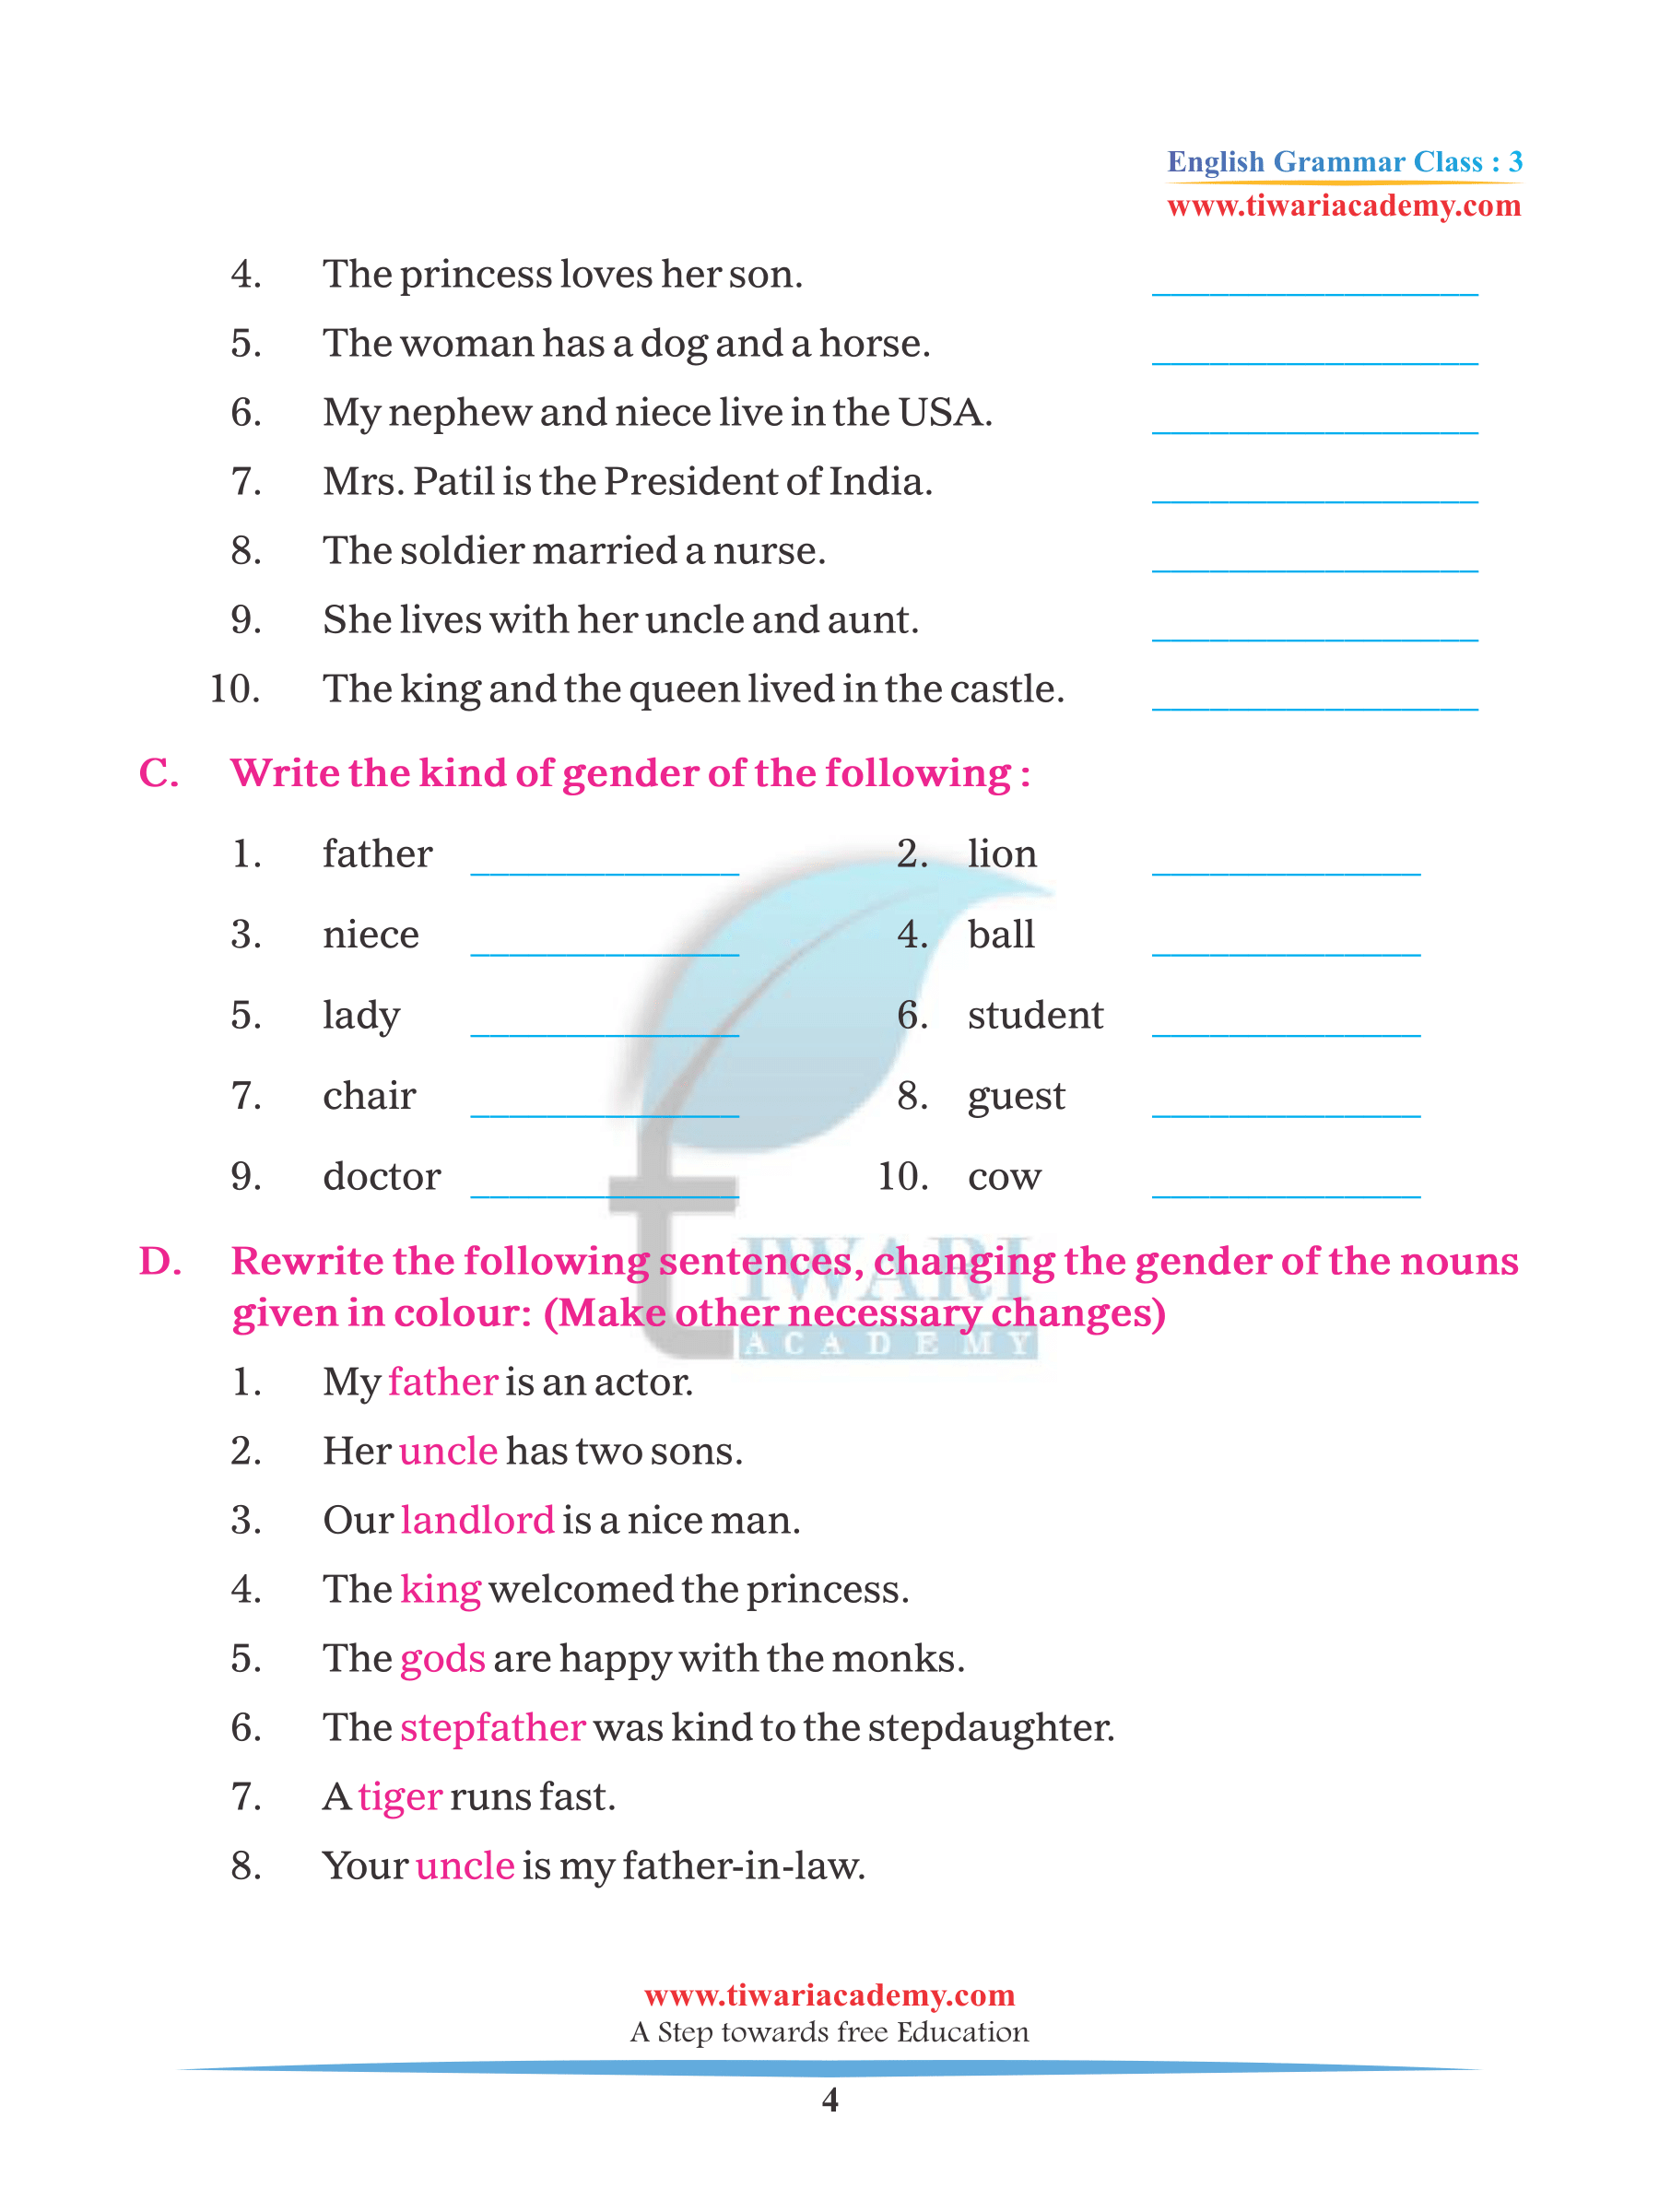 class-3-english-grammar-chapter-6-noun-gender-for-2023-2024-pdf